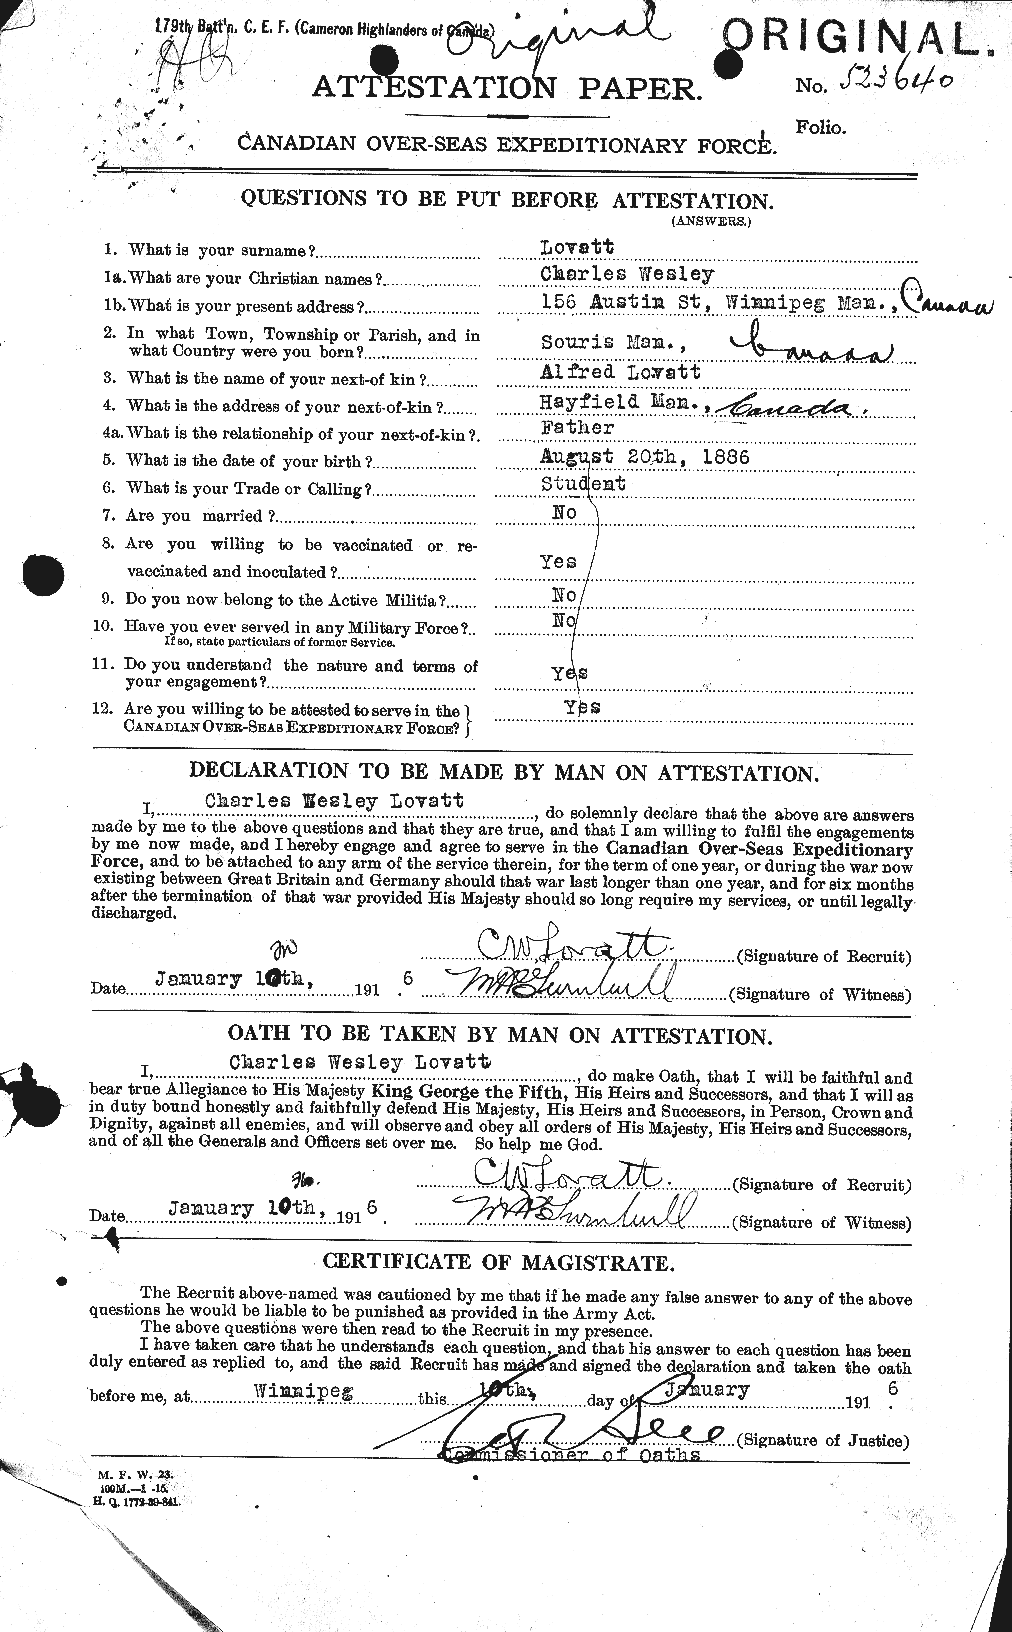 Dossiers du Personnel de la Première Guerre mondiale - CEC 472459a